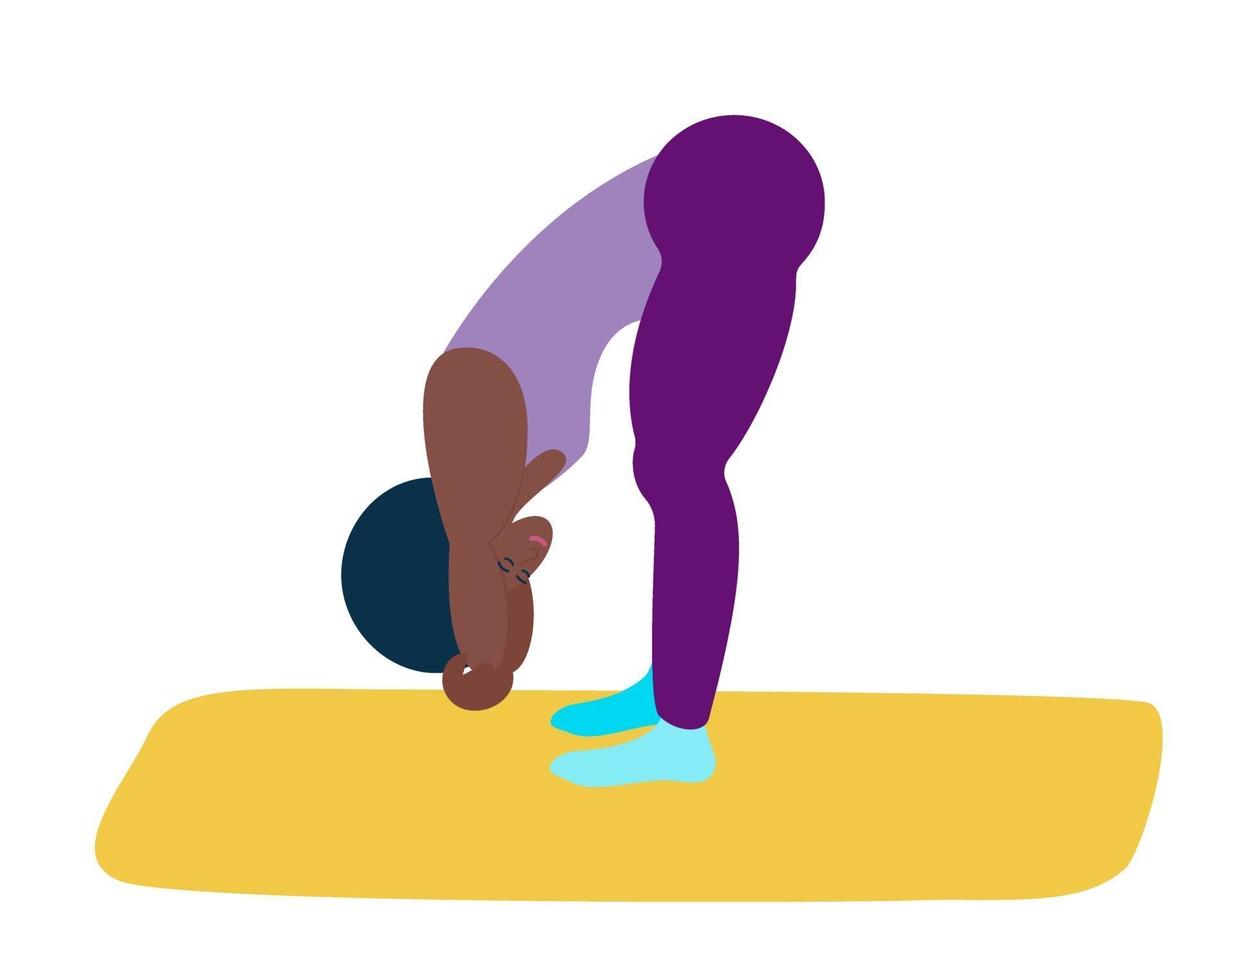 en kvinna med svart hud gör yoga. en sportig svart tjej visar en yogaställning - en trasdocka. vektorillustration i platt stil. hälsosam livsstil, andlig övning. vektor illustration